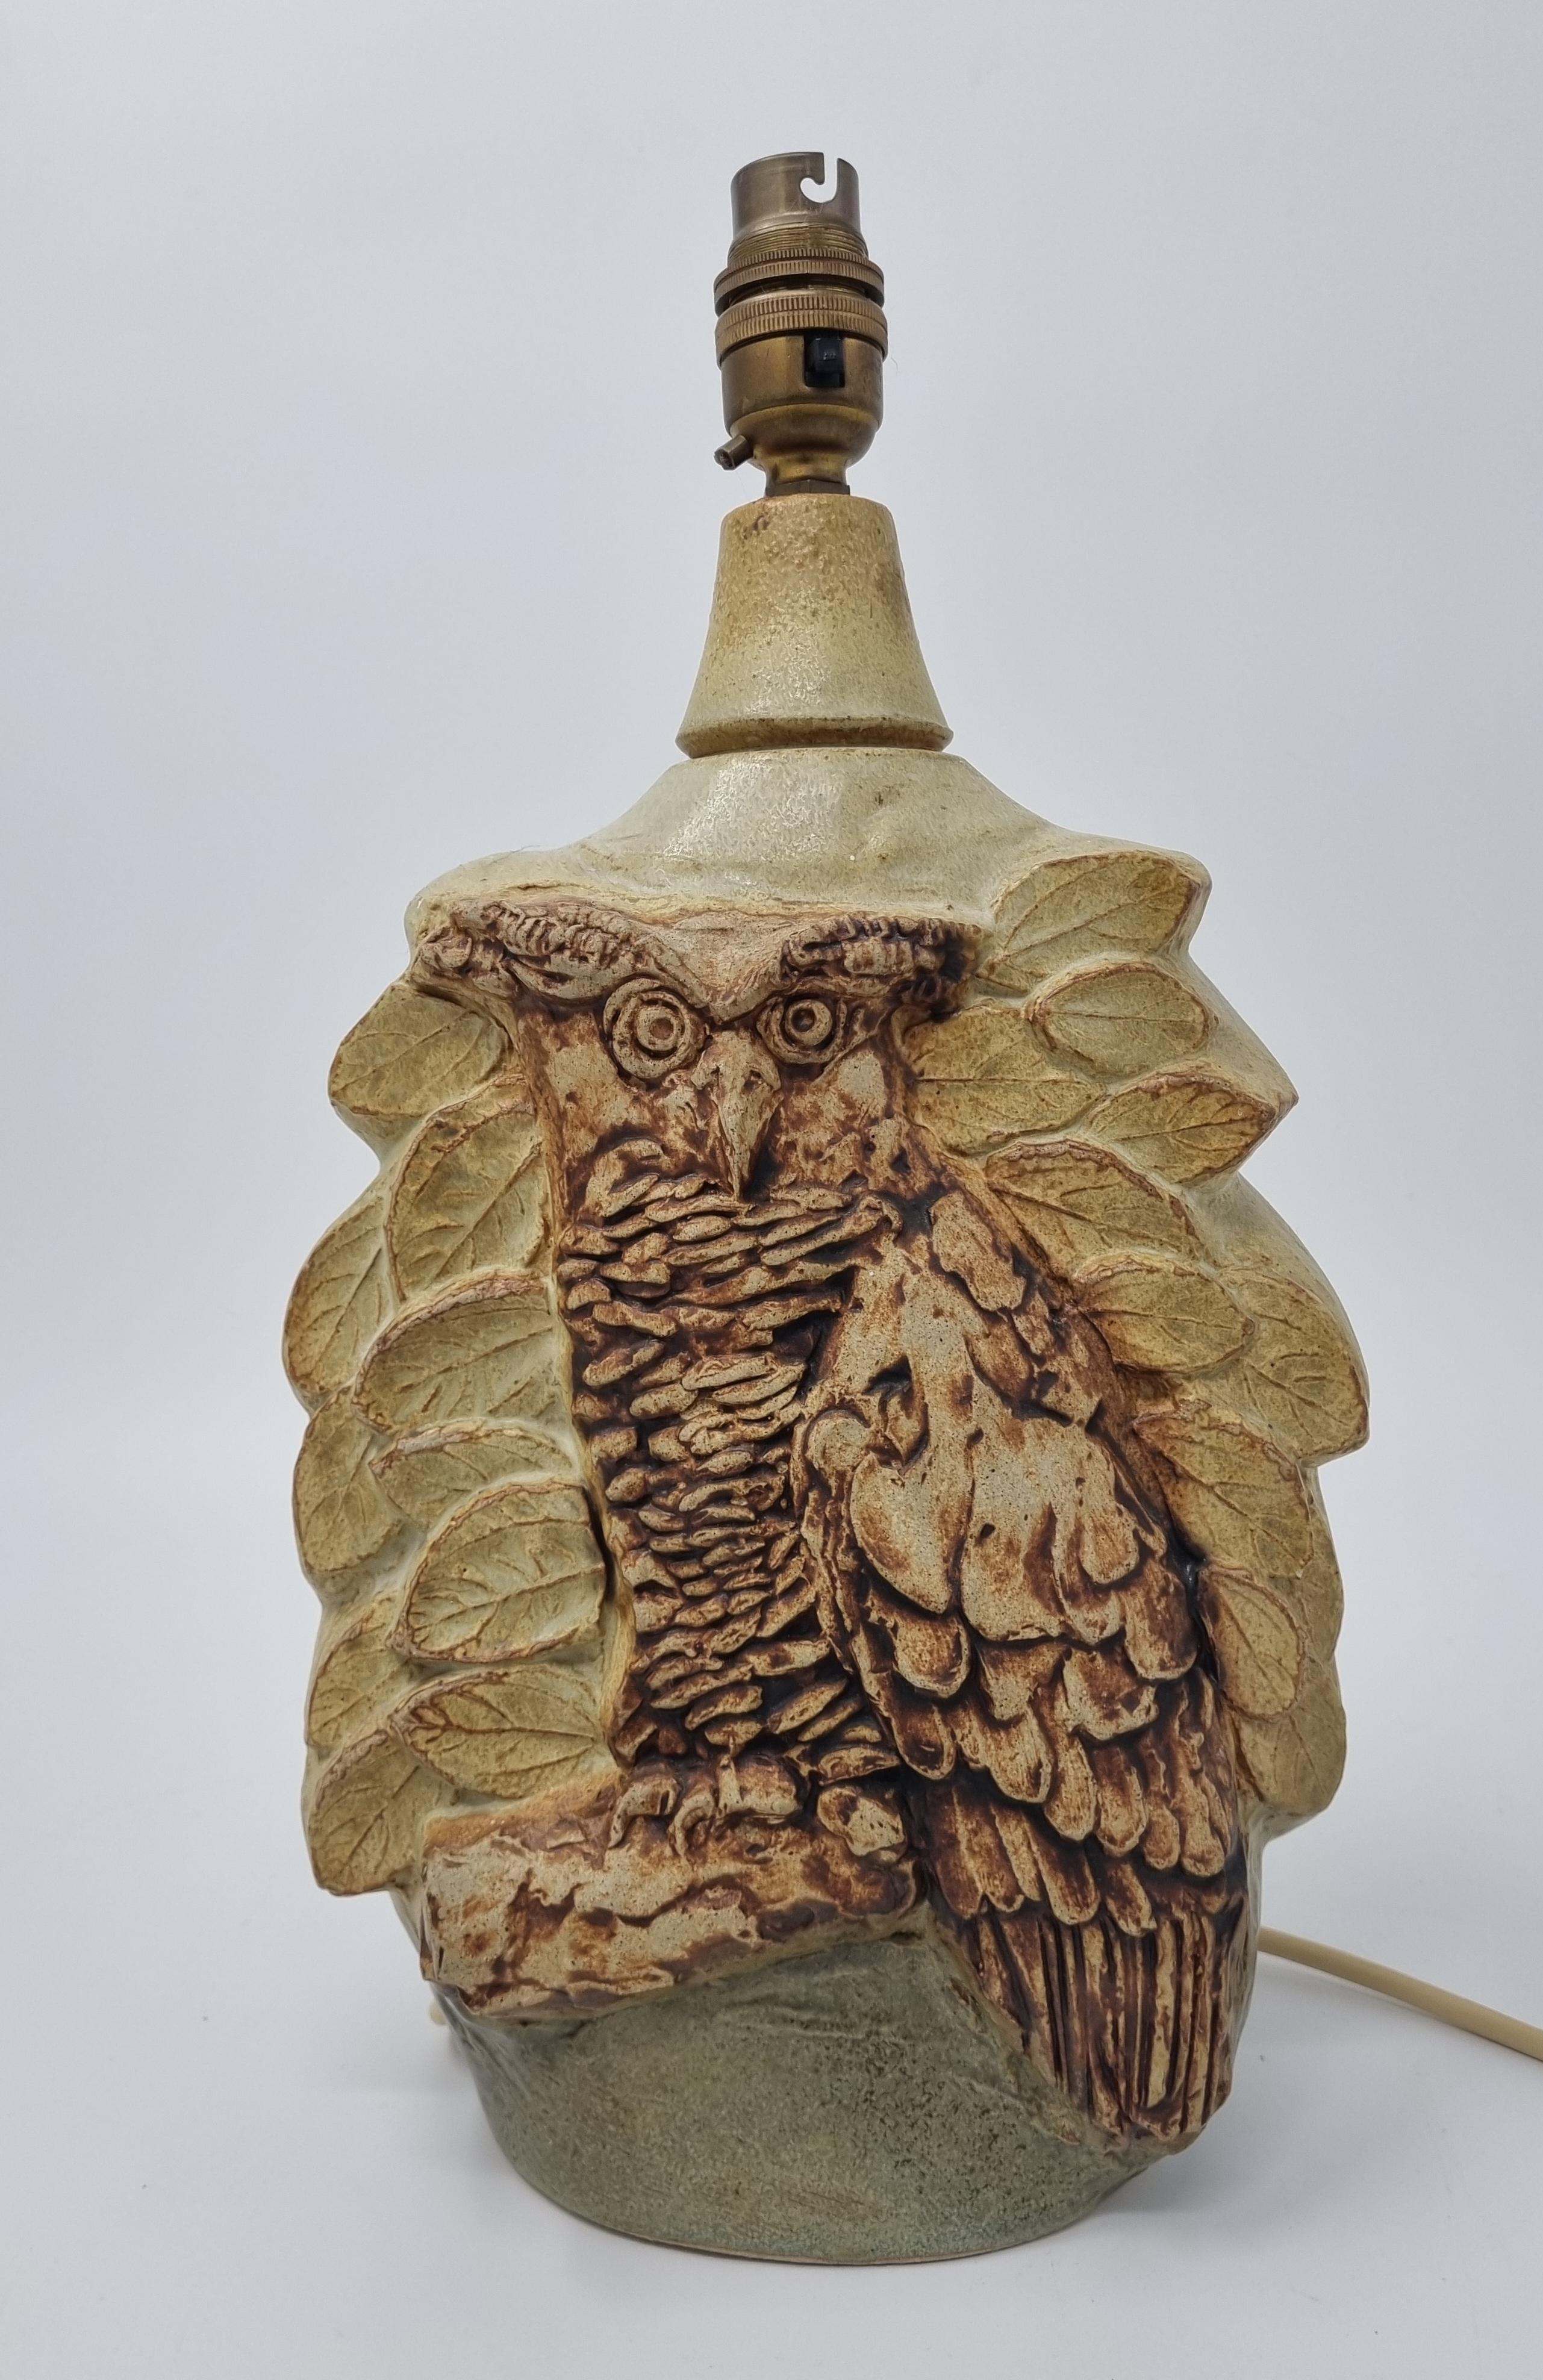 Bernard Rooke Studio Pottery Brutalist Style Owl Lamp est une lampe magnifiquement sculptée par le célèbre artiste et potier britannique, Bernard Rooke. Il s'agit d'un bel exemple de son travail.

Le parcours artistique de Bernard Rooke a commencé à